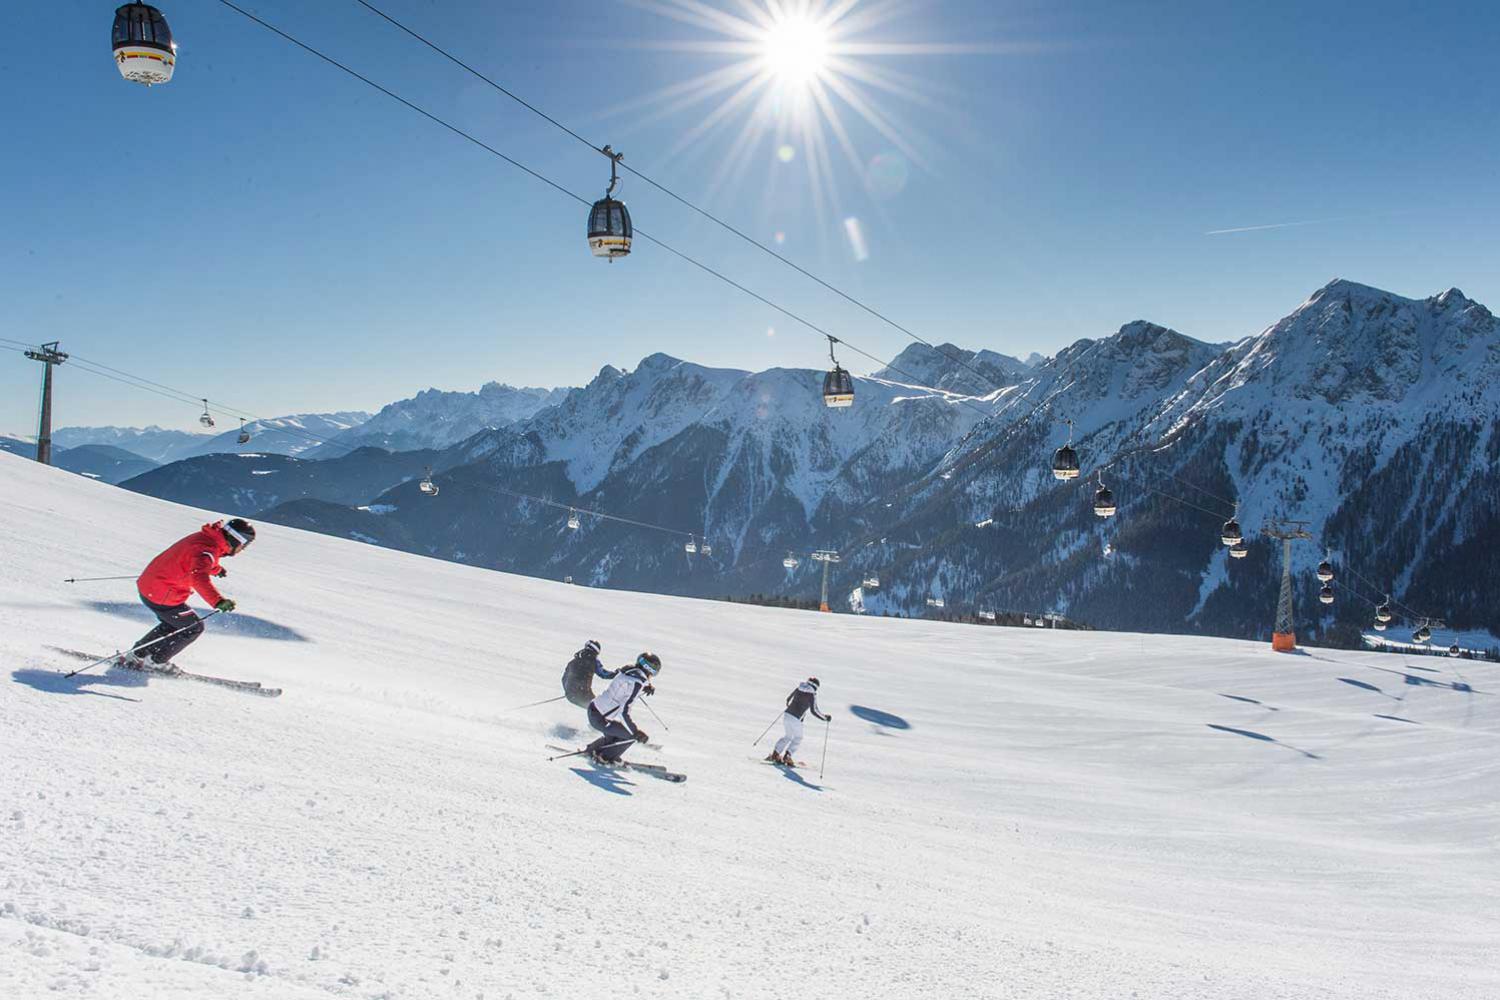 Plan de Corones ski resort